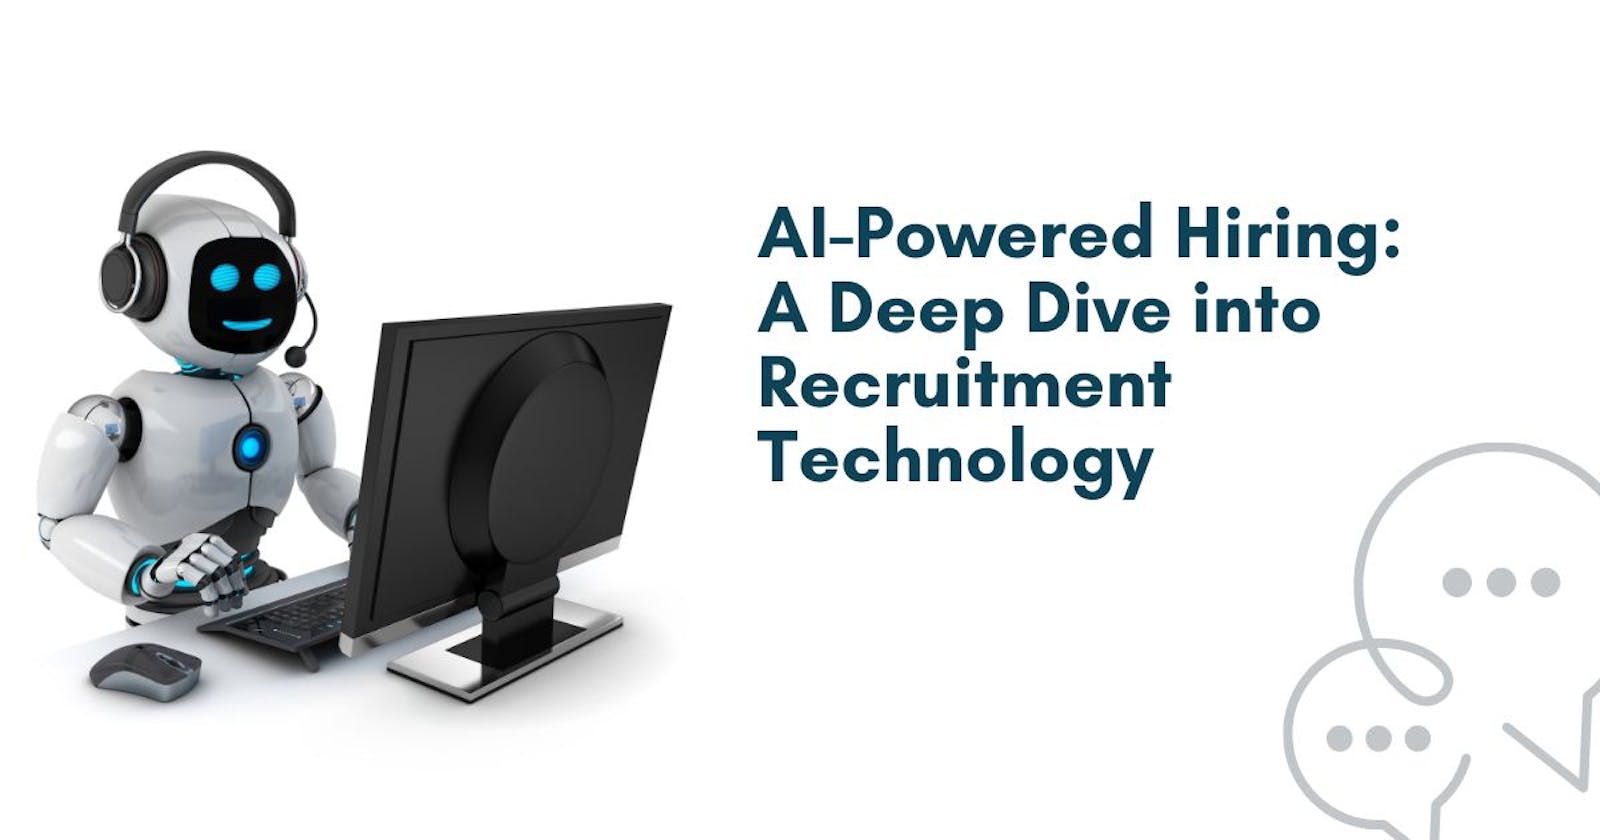 AI-Powered Hiring: A Deep Dive into Recruitment Technology